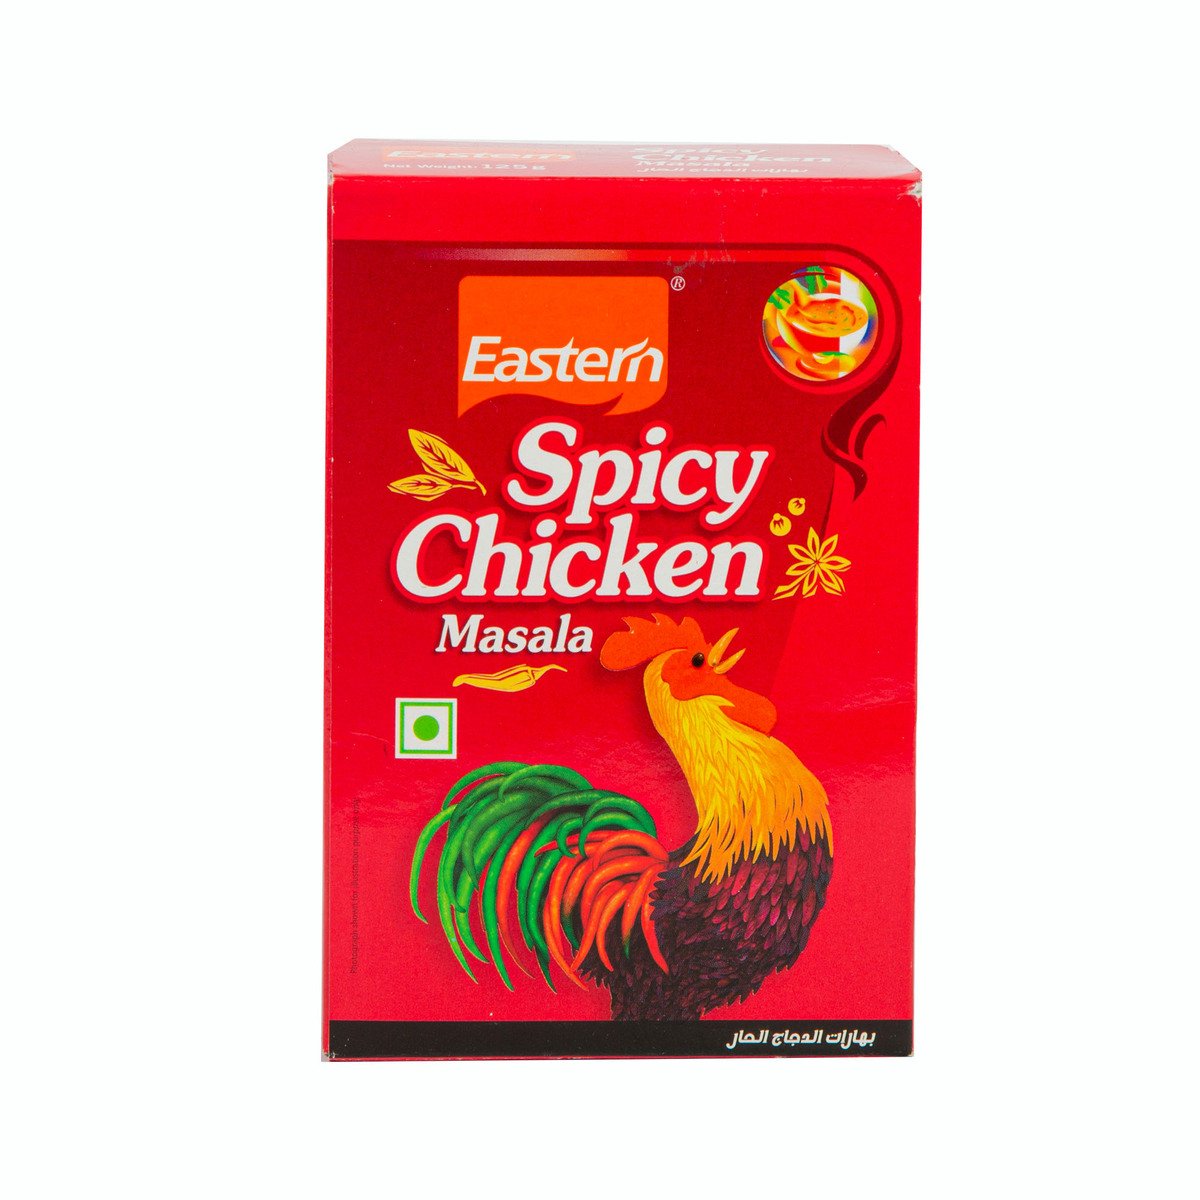 Eastern Spicy Chicken Masala 125 g